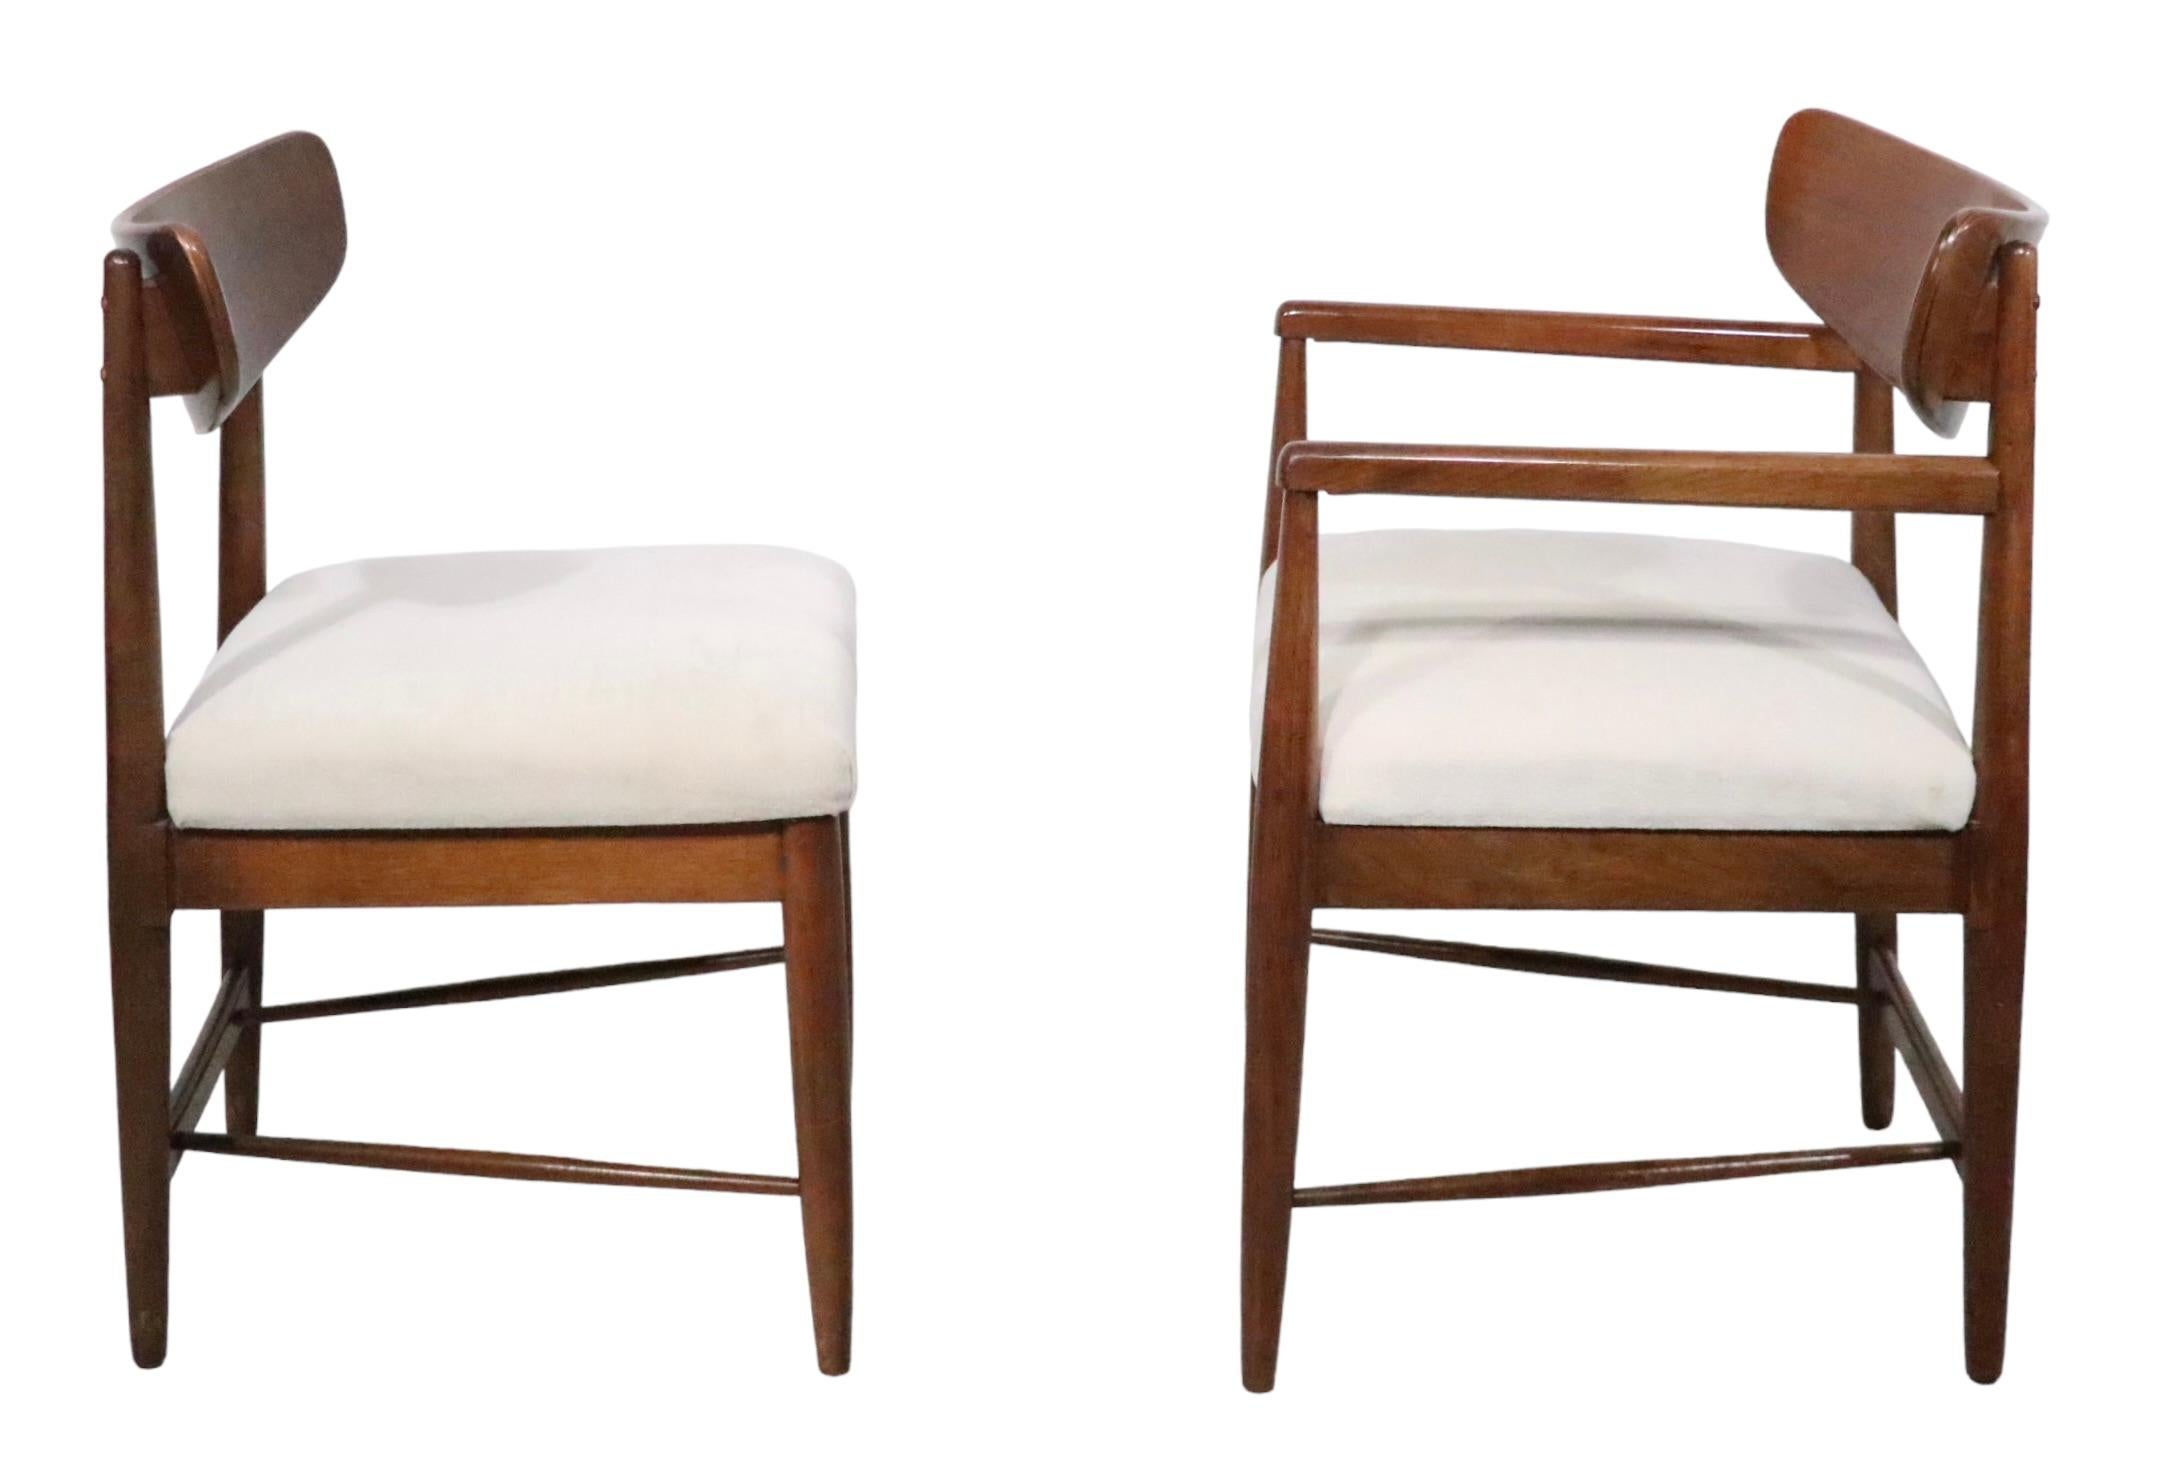 Schickes architektonisches Set von Mid Century Modern Esszimmerstühlen, entworfen von Merton Gershun für American of Martinsville als Teil ihrer klassischen Dania Serie, ca. 1950-1960er Jahre. Dieses beeindruckende Set besteht aus zwei